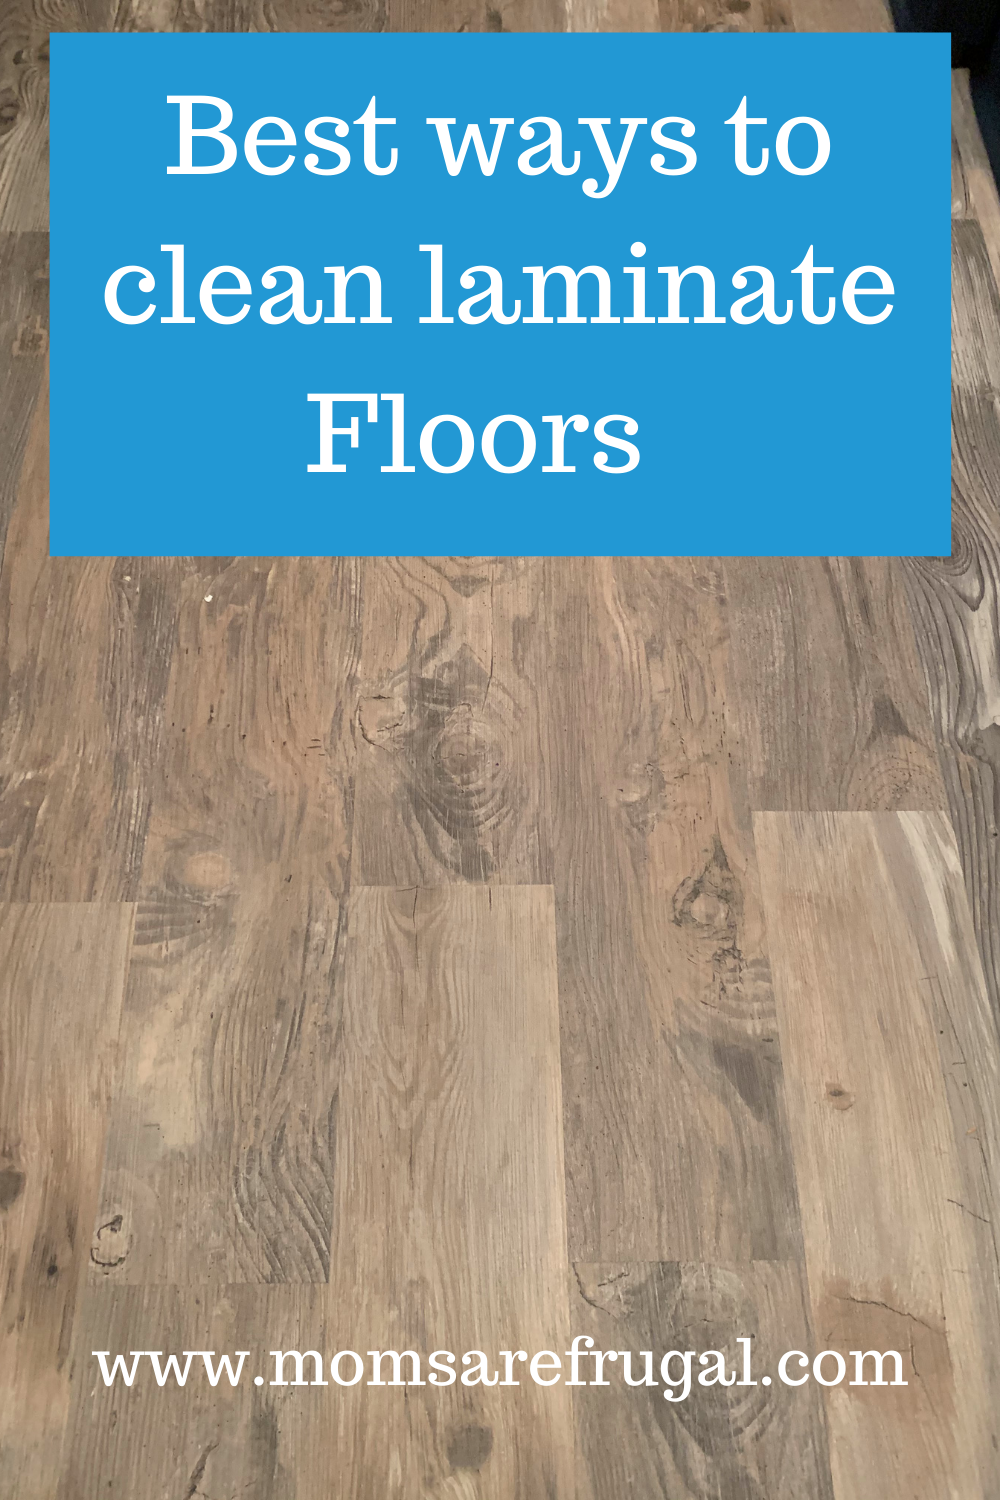 Best Ways to clean Laminate Floors